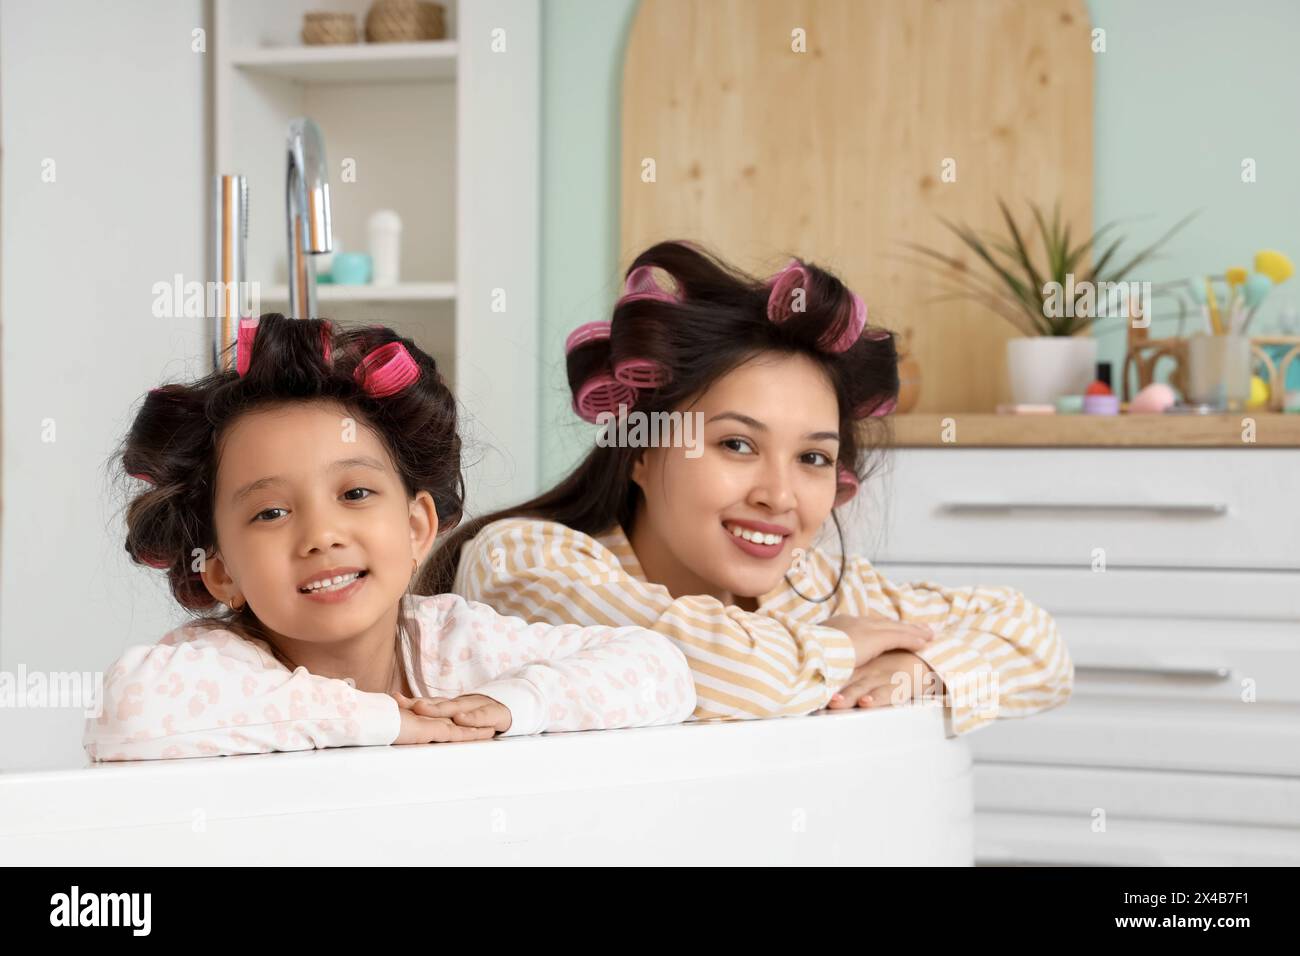 Das kleine asiatische Mädchen und ihre Mutter mit Lockenwicklern in der Badewanne zu Hause Stockfoto